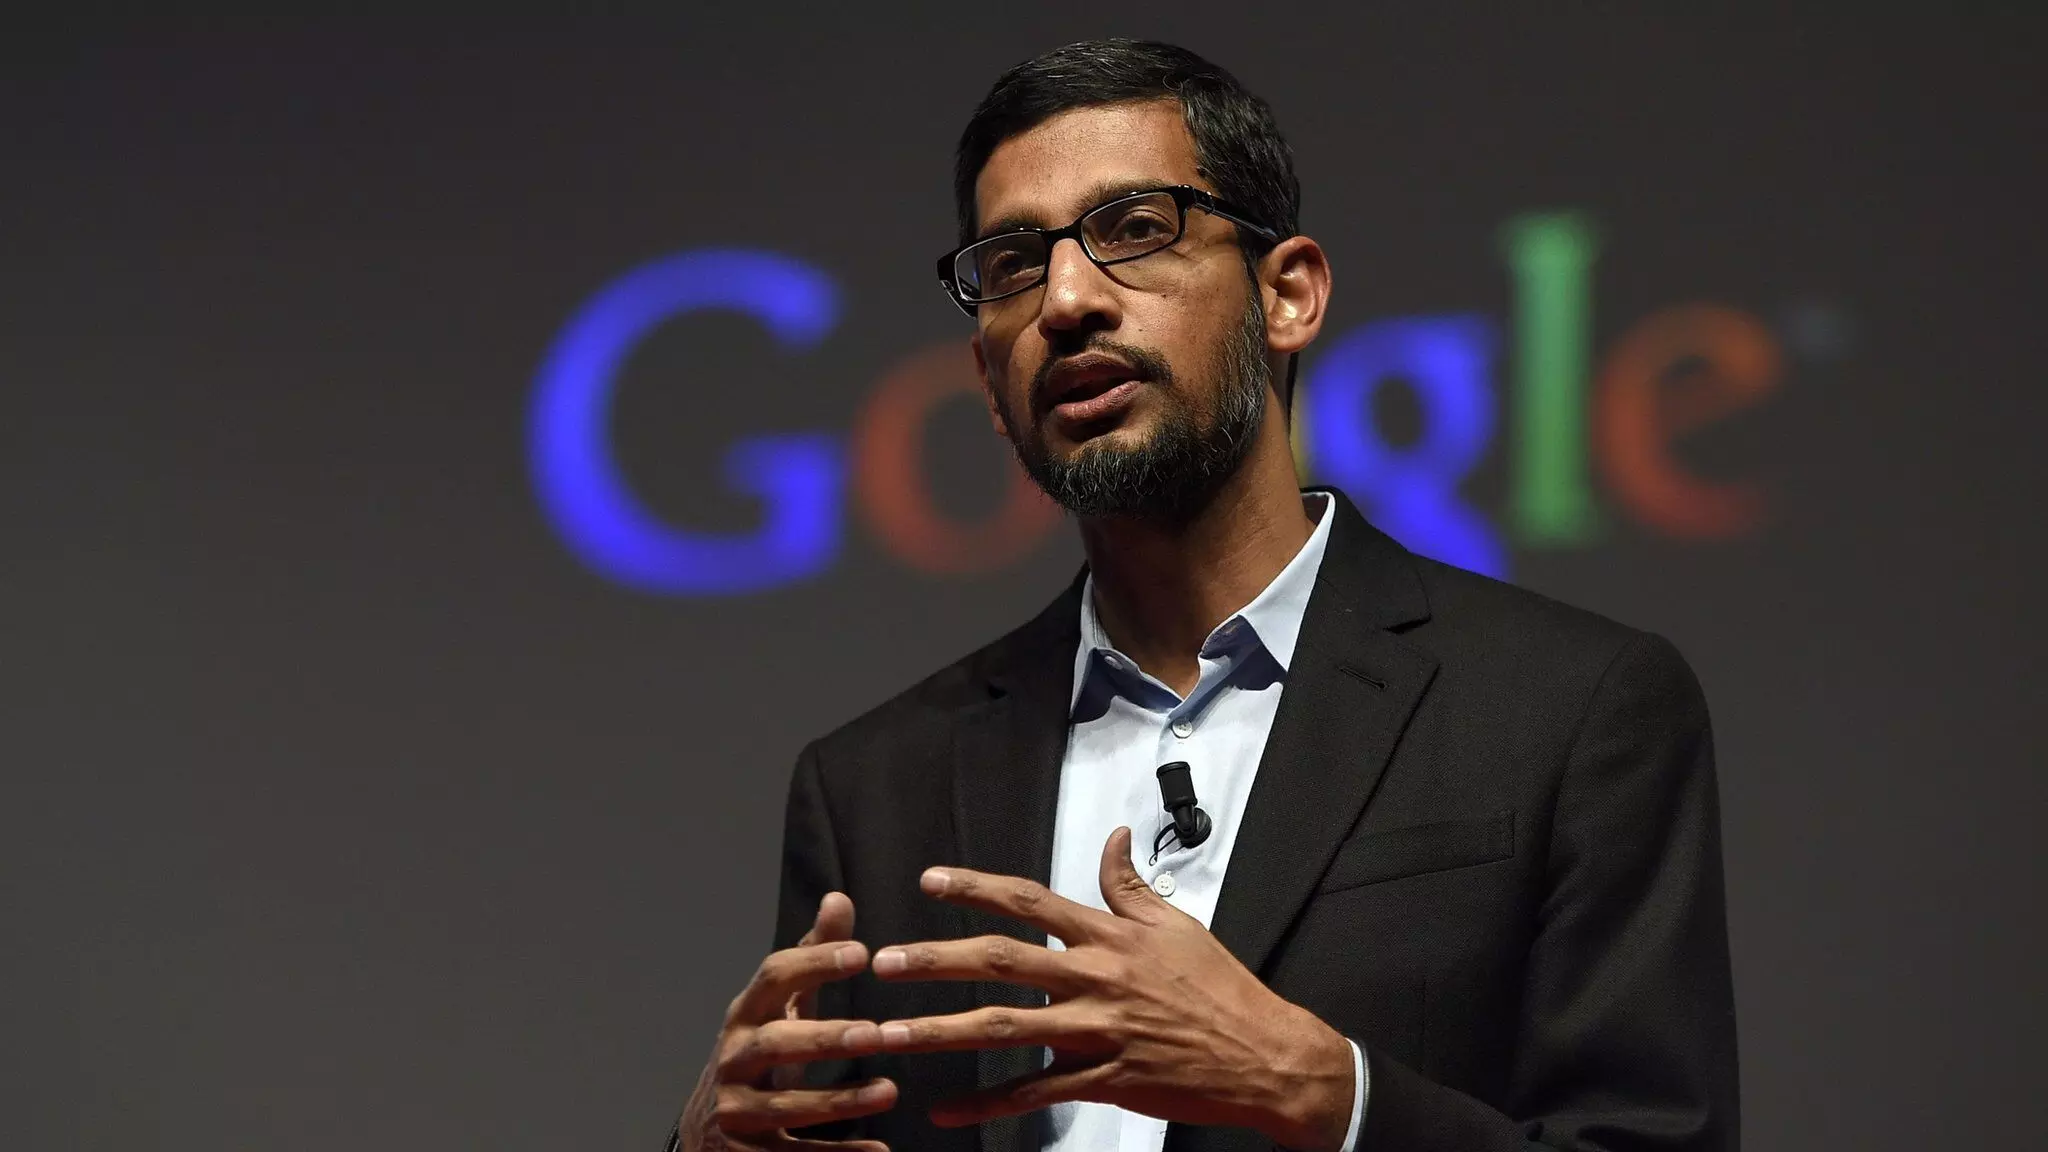 Amid jobs cuts, Google CEO Sundar Pichai receives $200 million in 2022